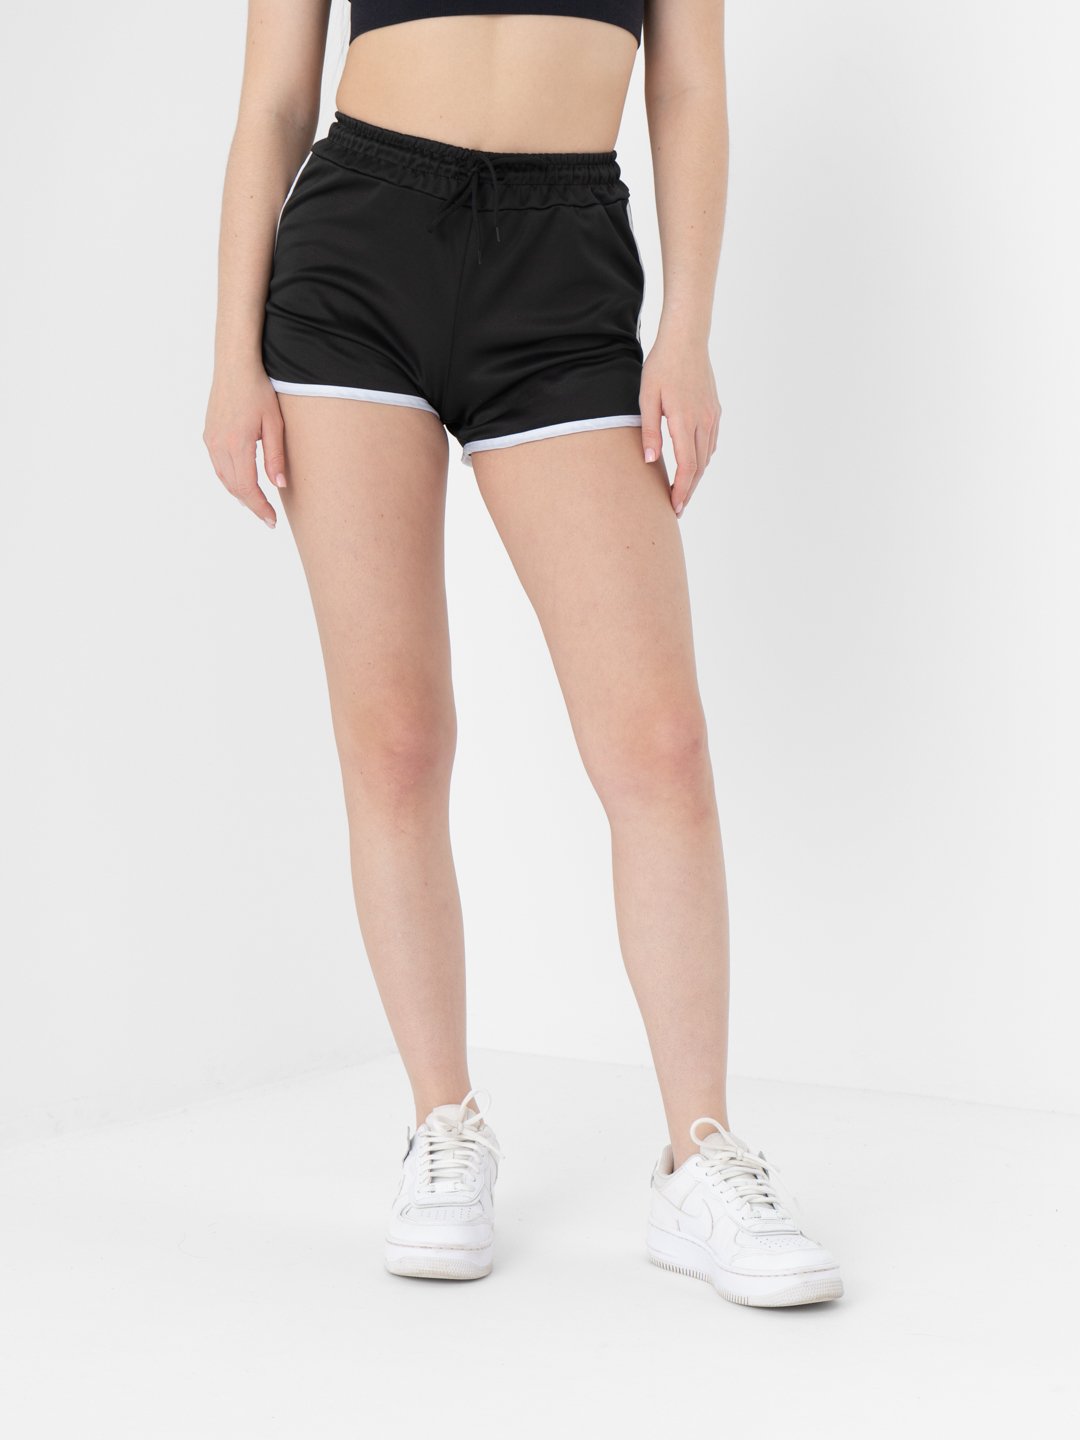 Шорты женские черные спортивные, повседневные шорты Active купить по цене 343.13 ₽ в интернет-магазине KazanExpress